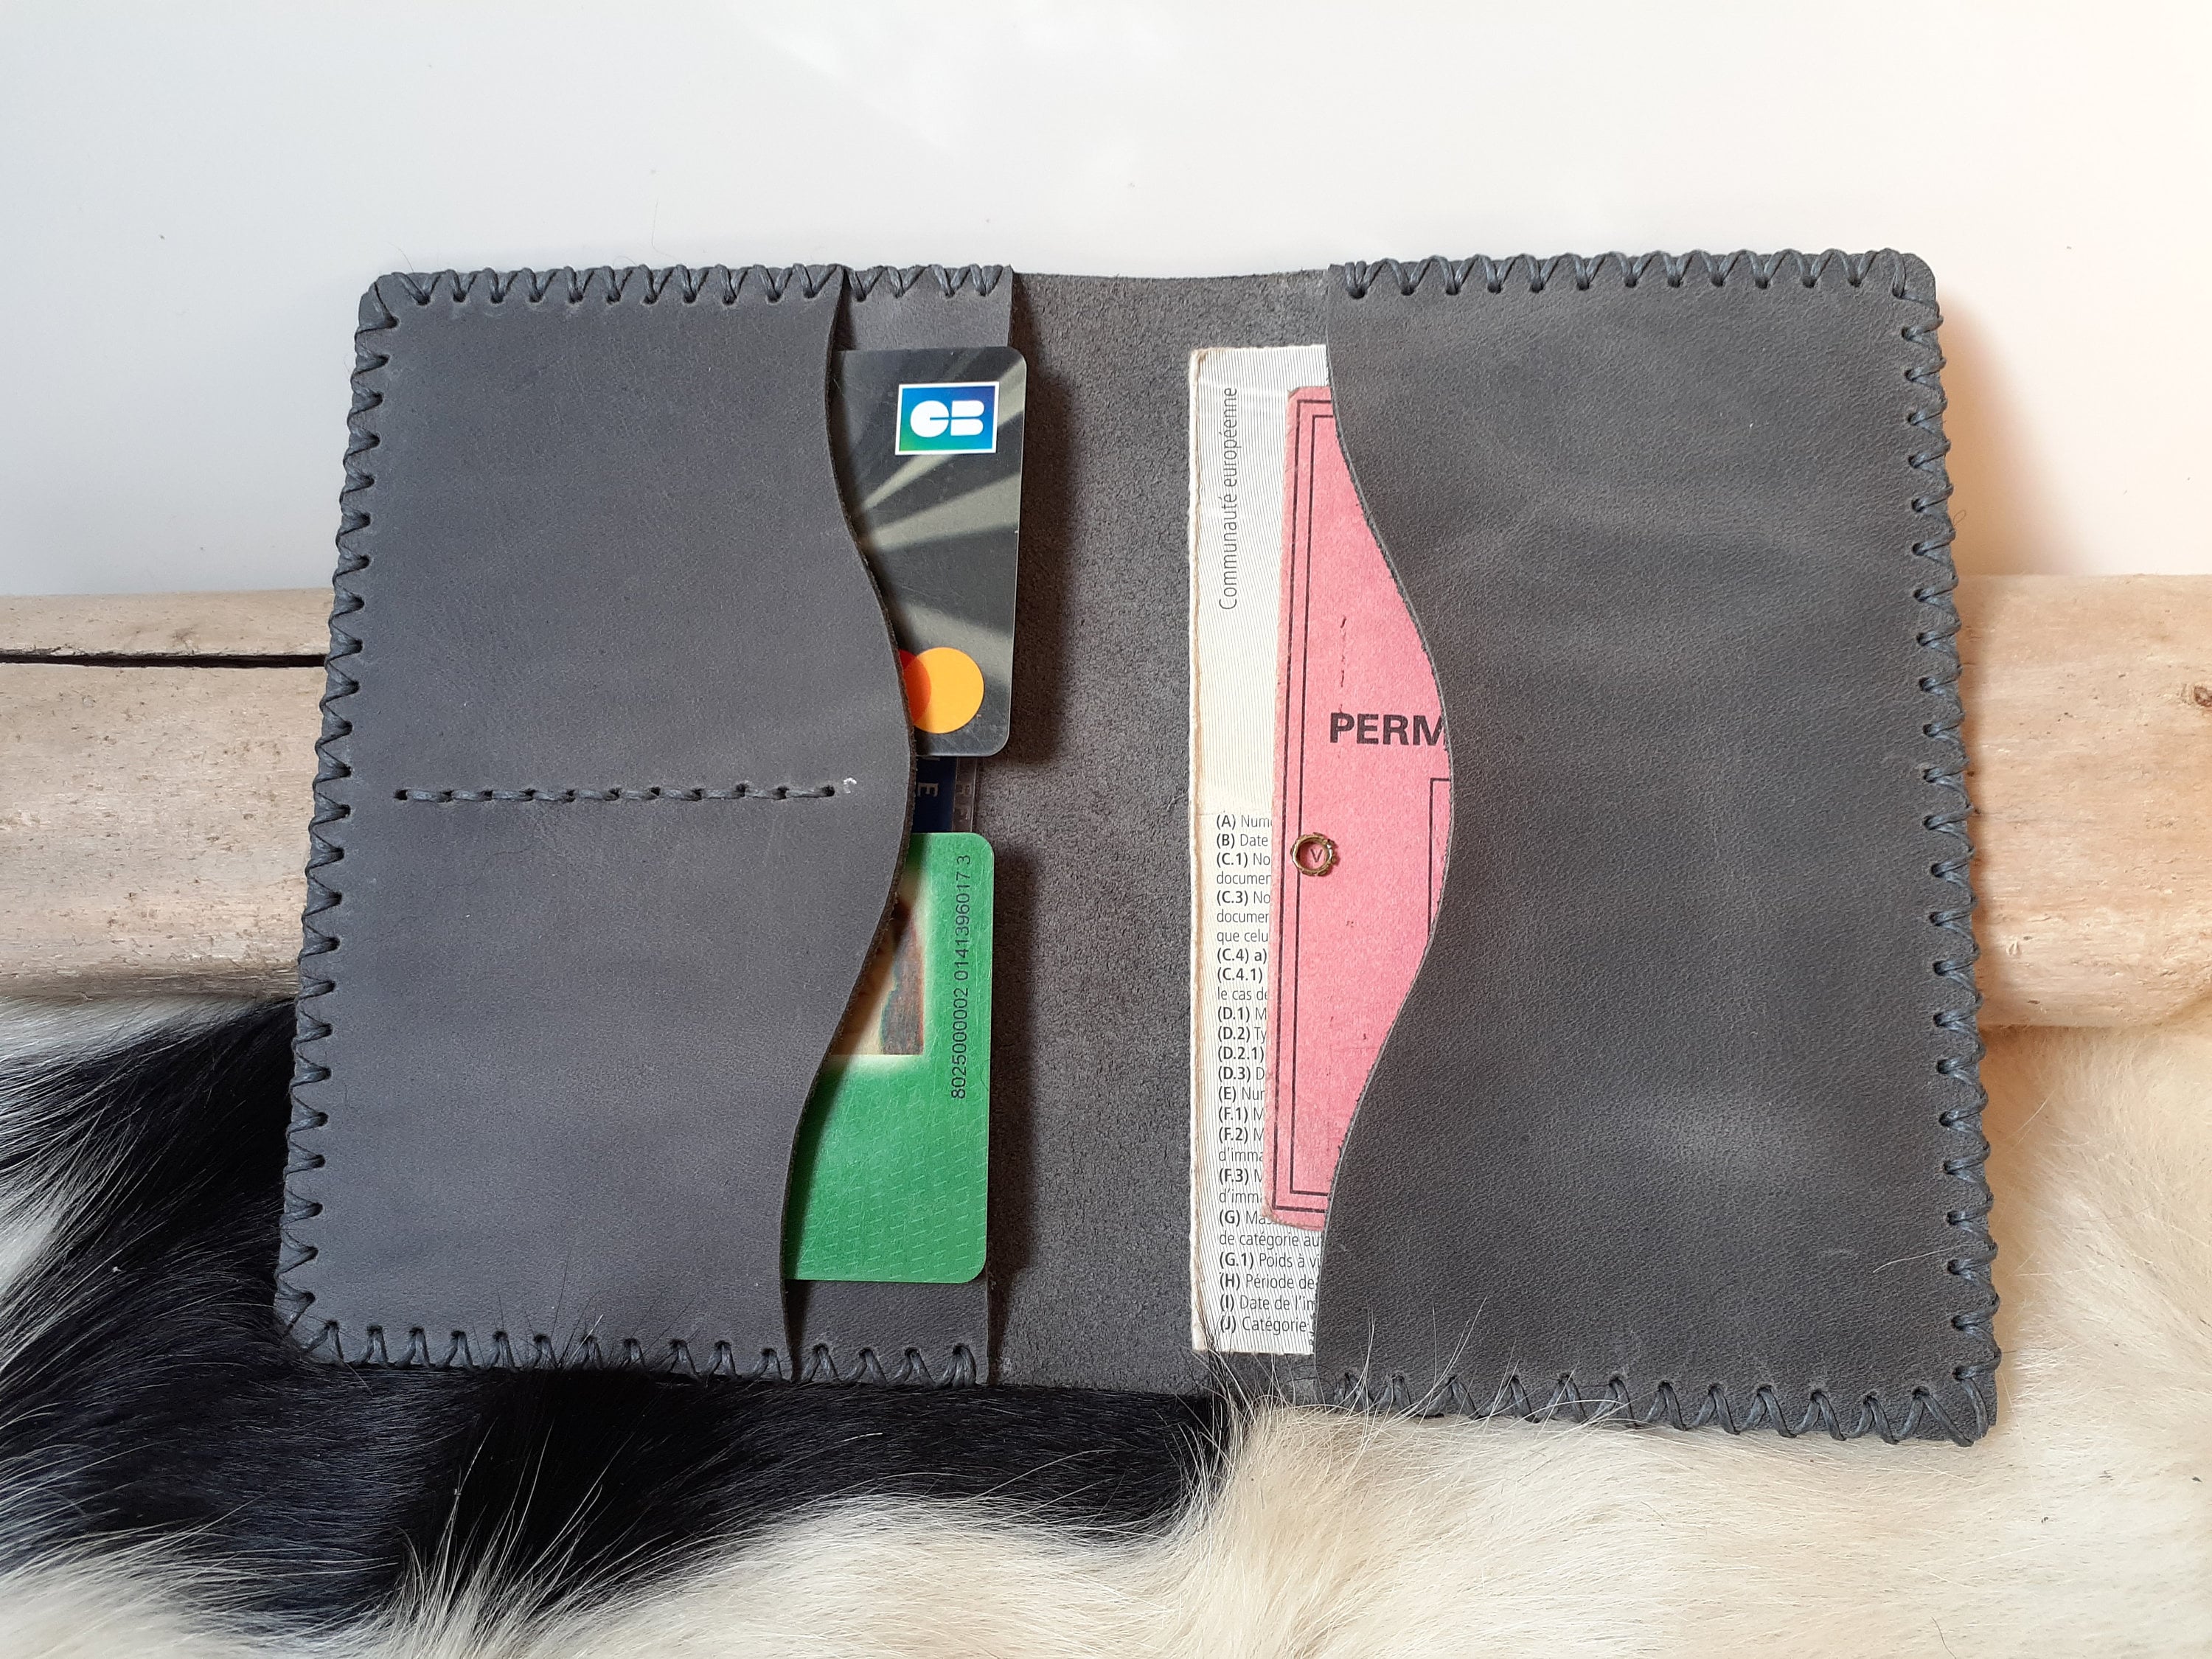 kwmobile Porte permis de conduire carte grise avec compartiments cartes  passeport - Étui portefeuille de protection en simili cuir blanc-noir